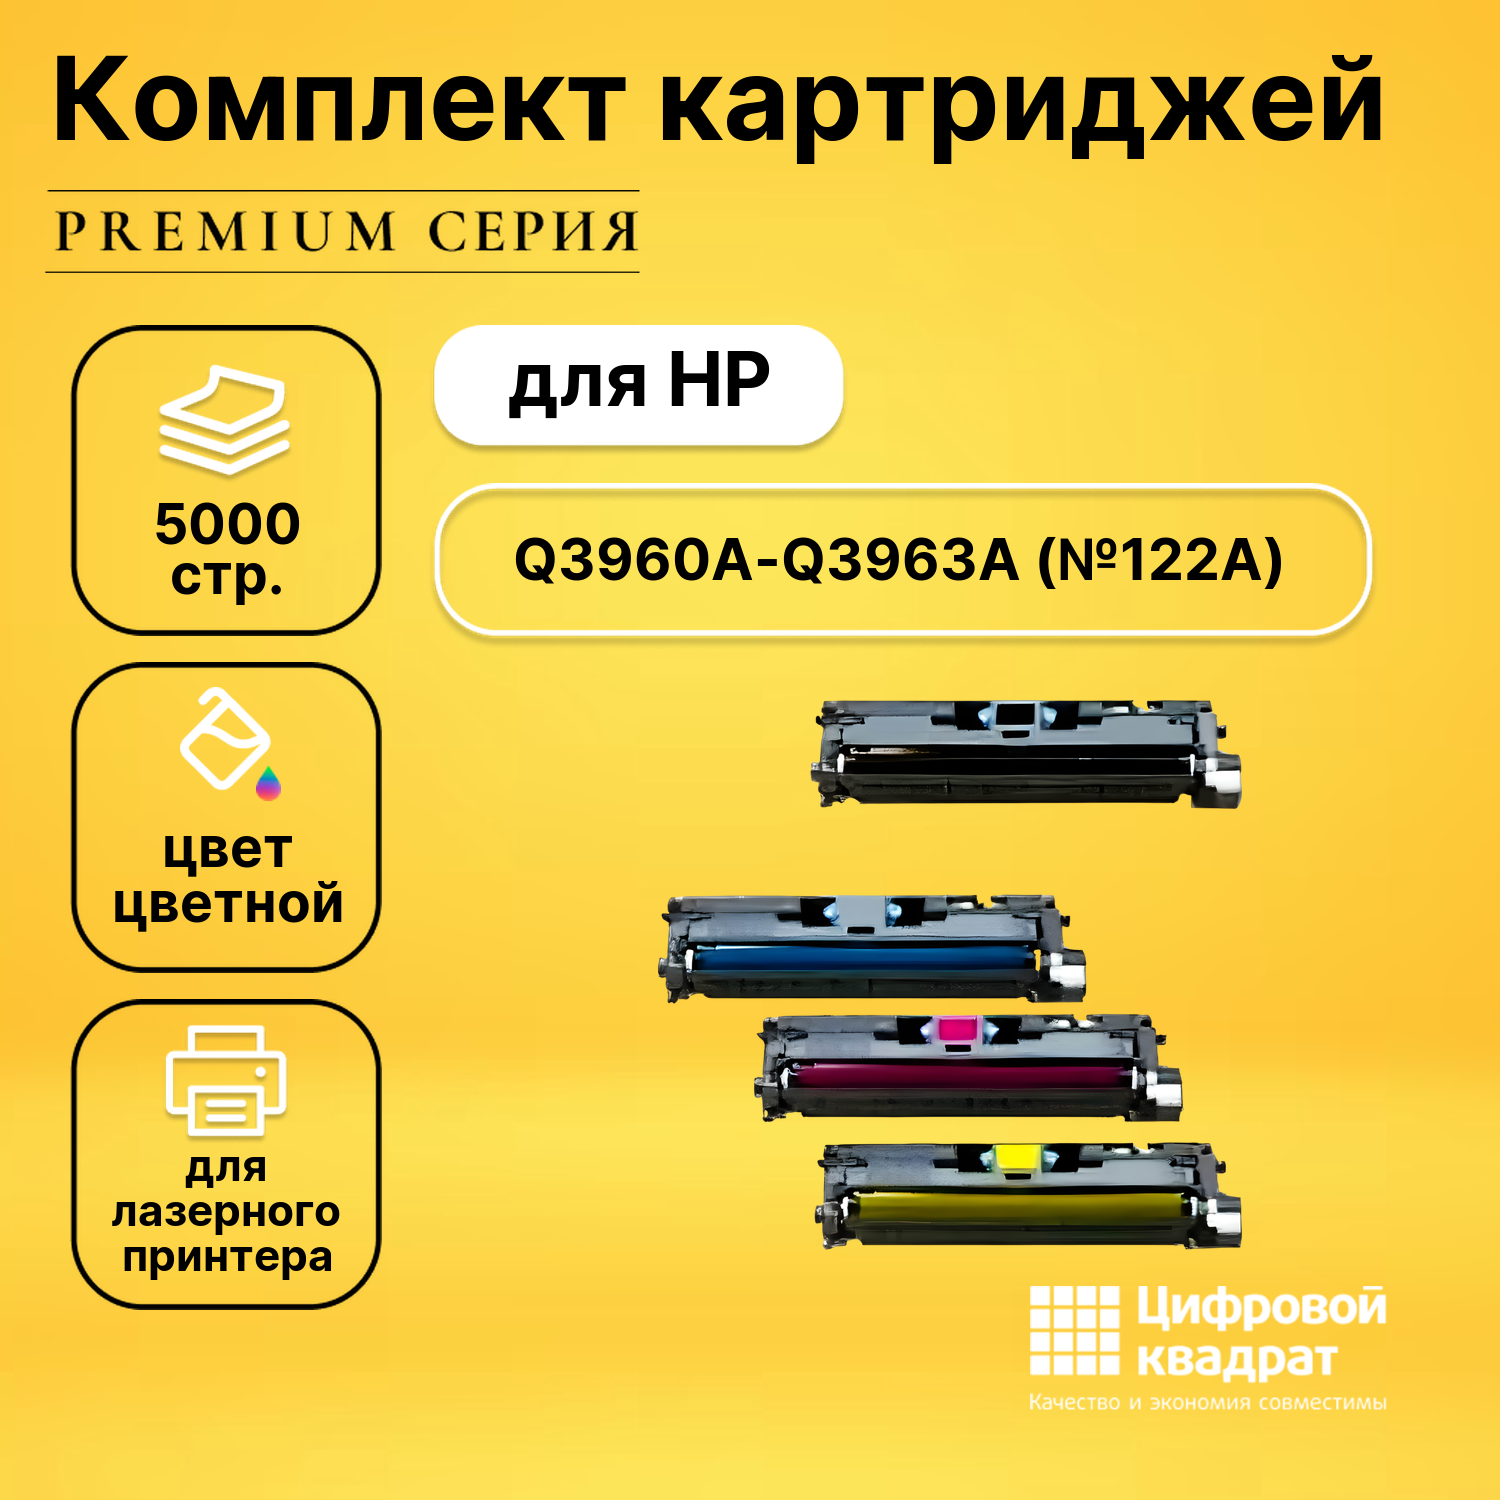 Набор картриджей DS Q3960A-Q3963A HP 122A совместимый